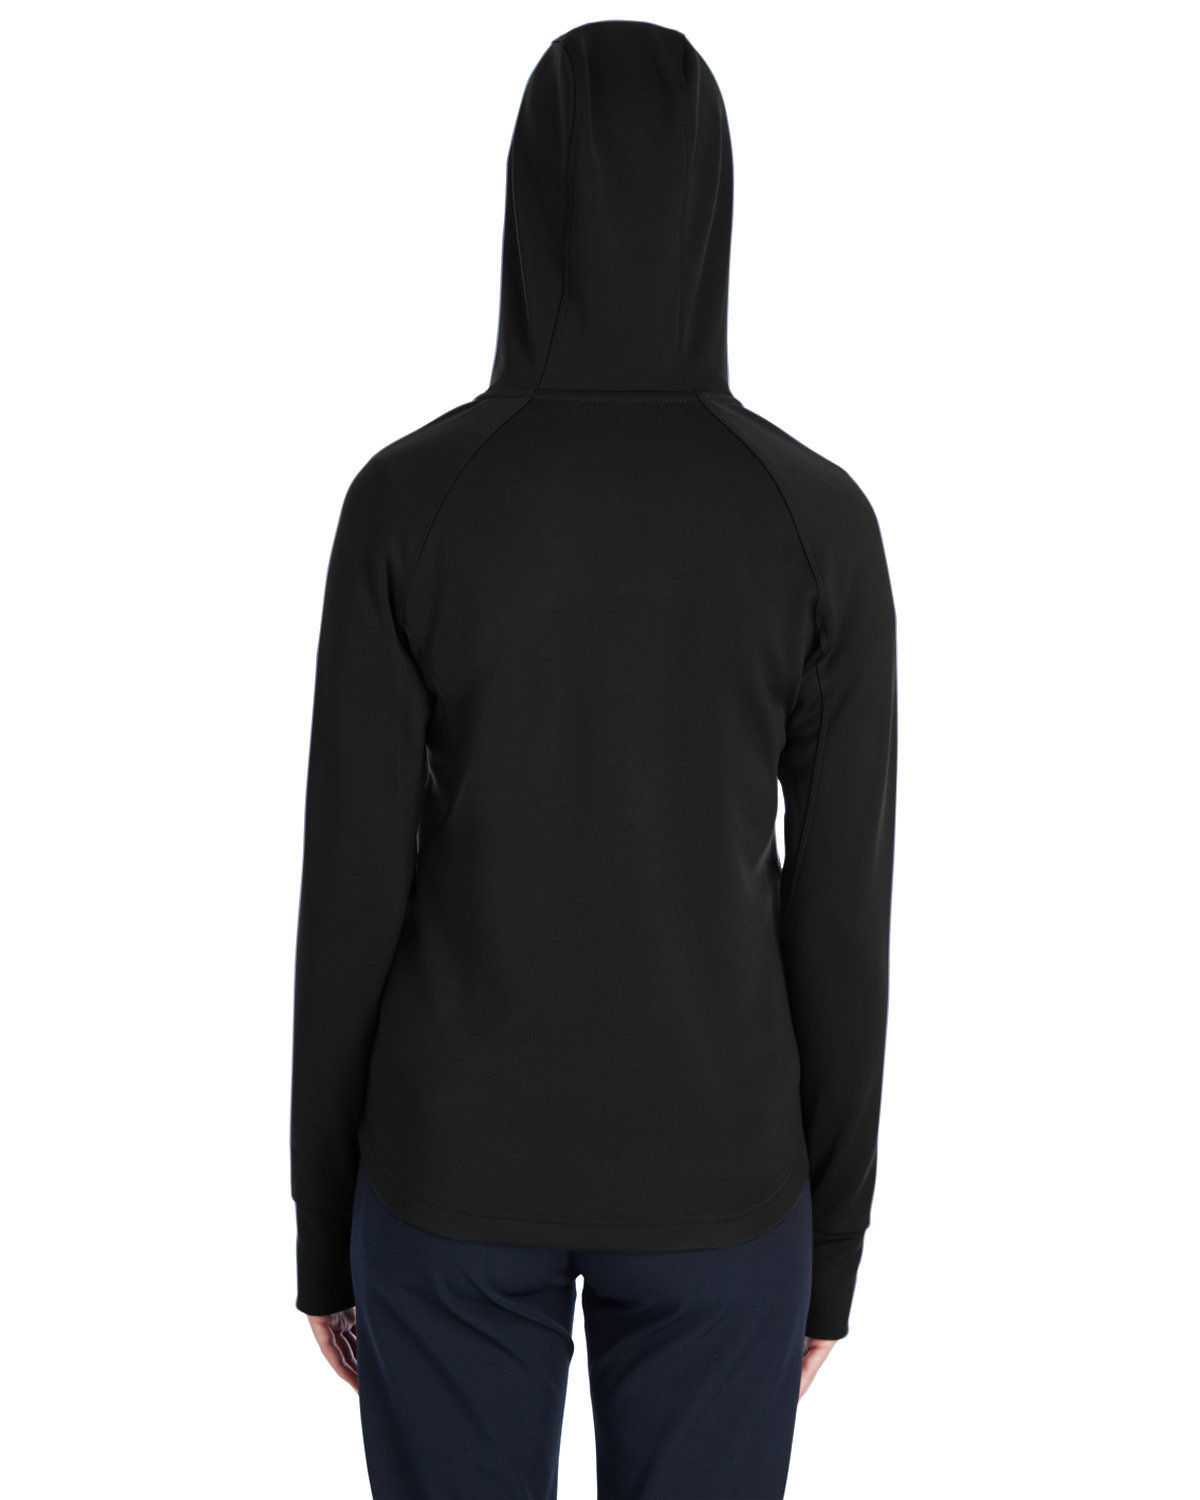 Spyder Ladies' Hayer Full-Zip Hooded Fleece Jacket | alphabroder Canada